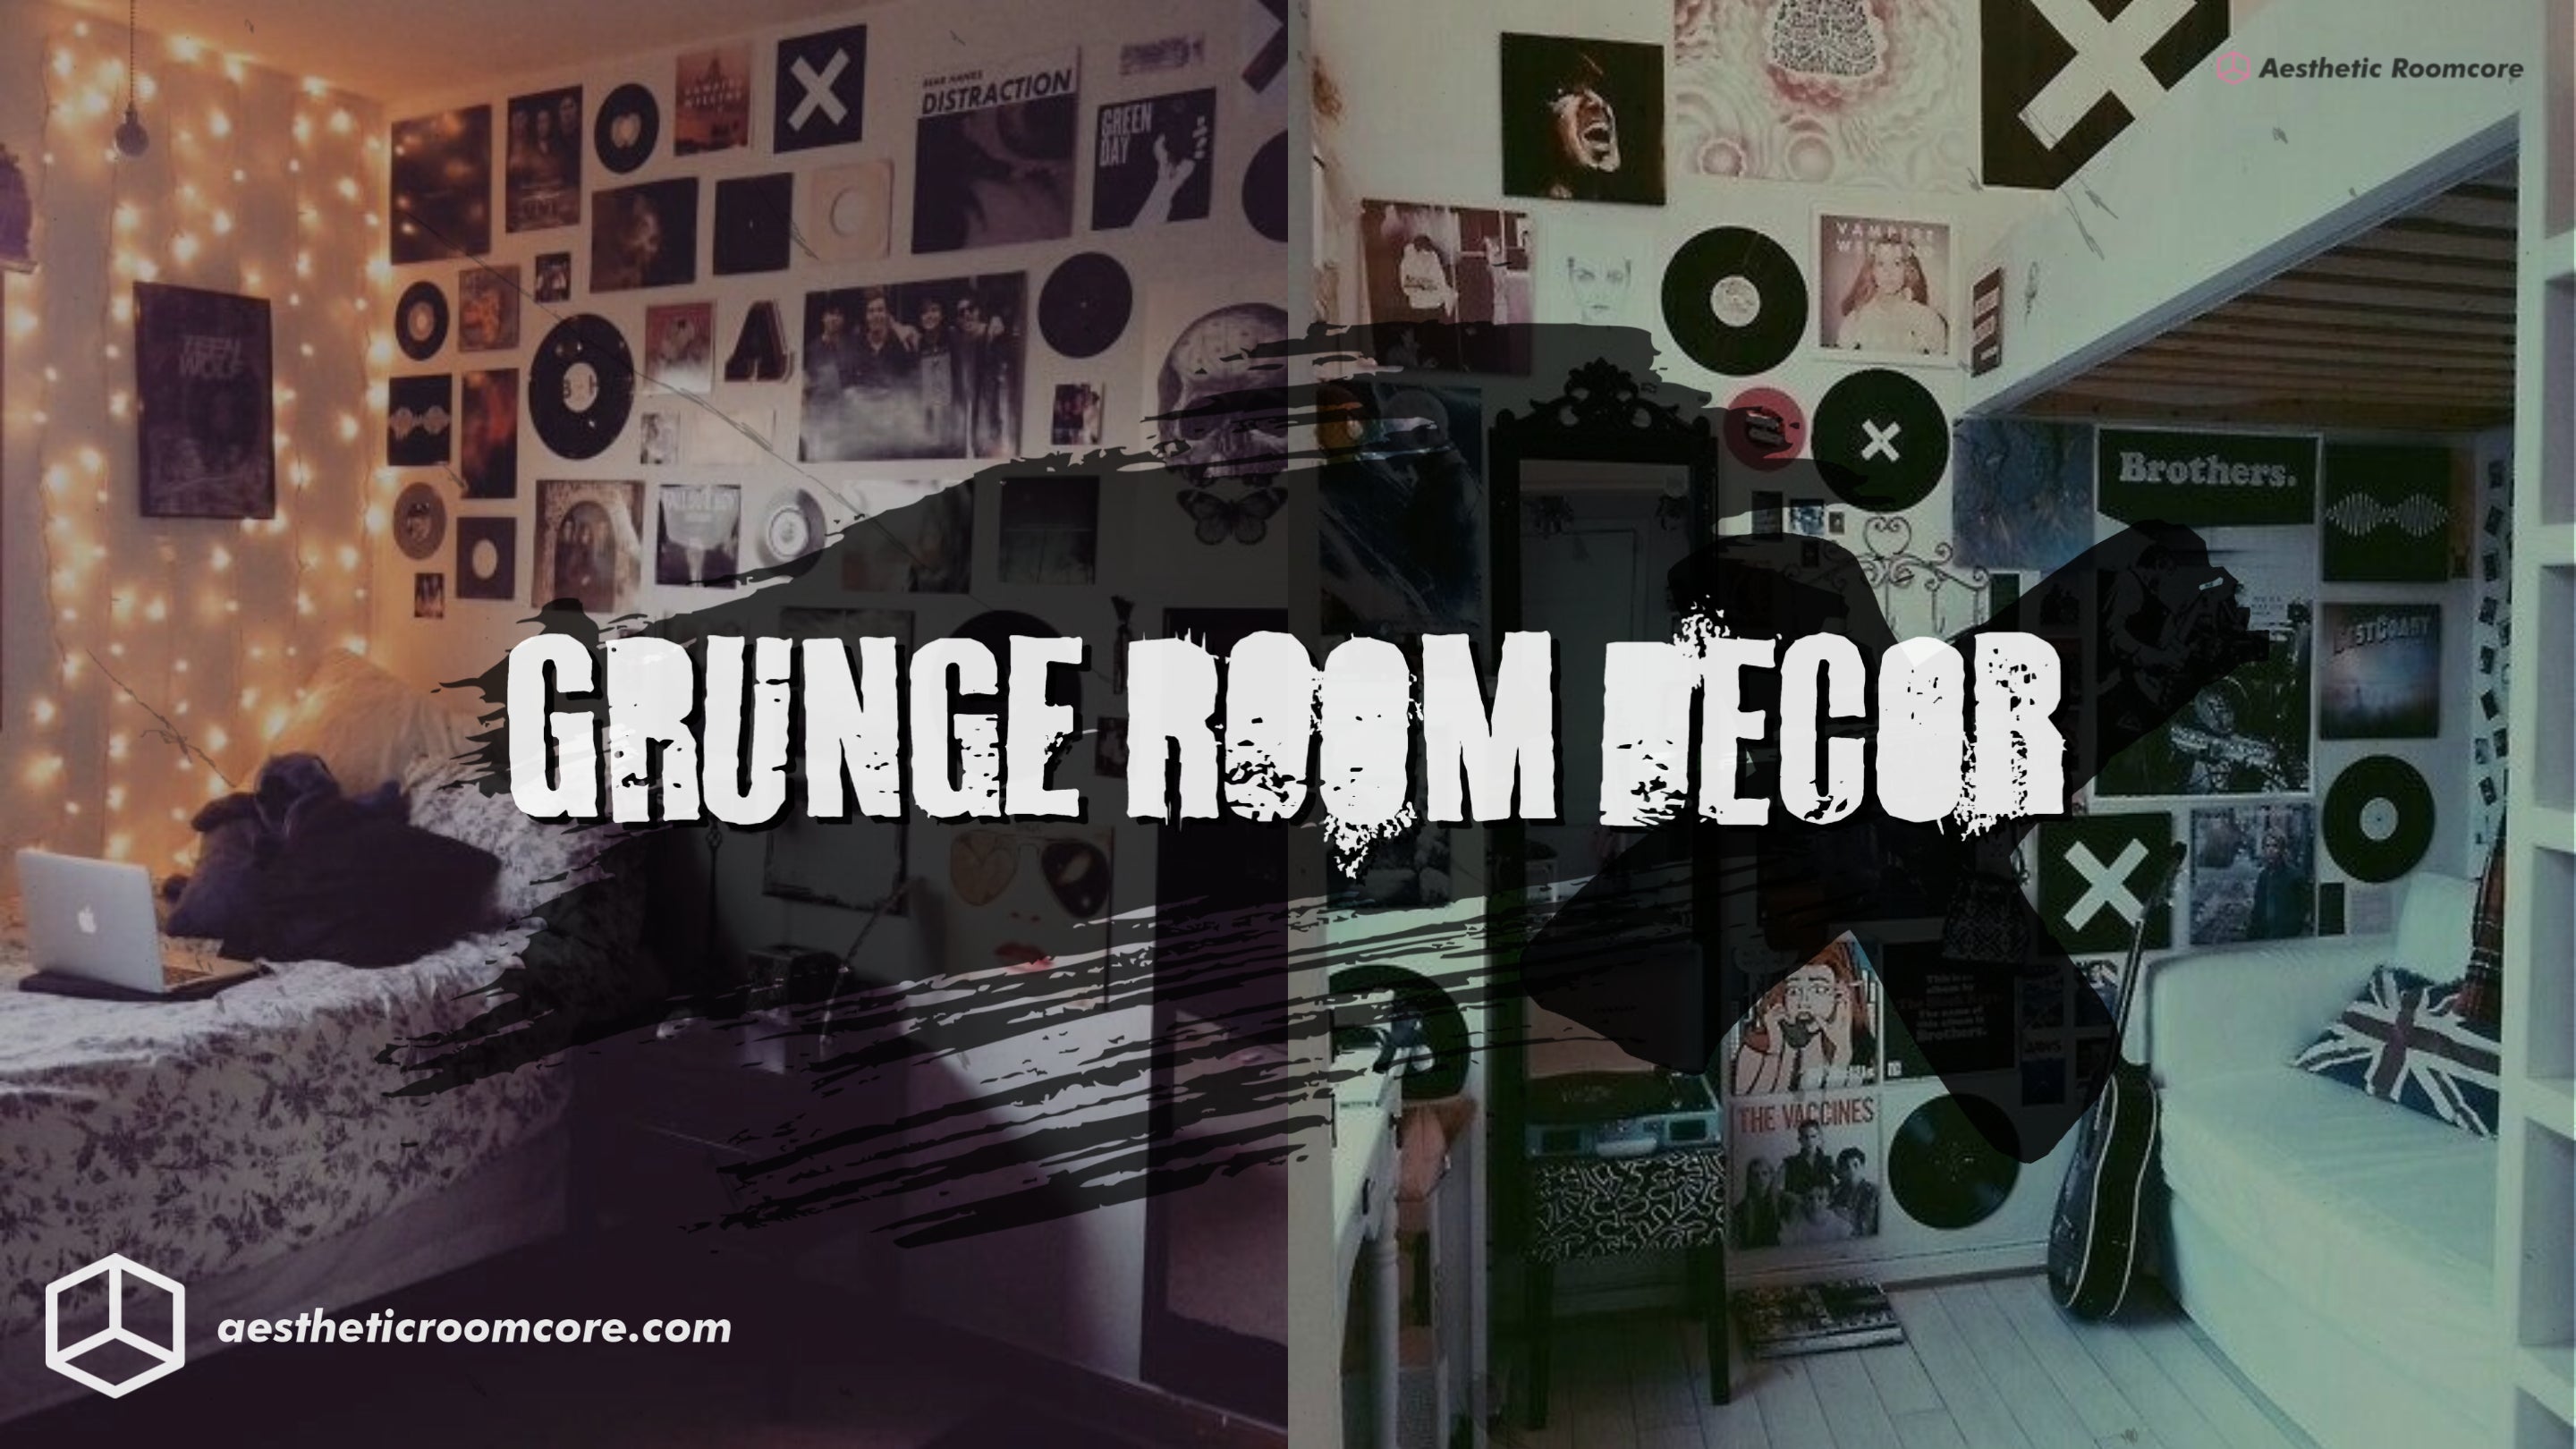 http://www.aestheticroomcore.com/cdn/shop/articles/Grunge_Room_1.jpg?v=1629647461